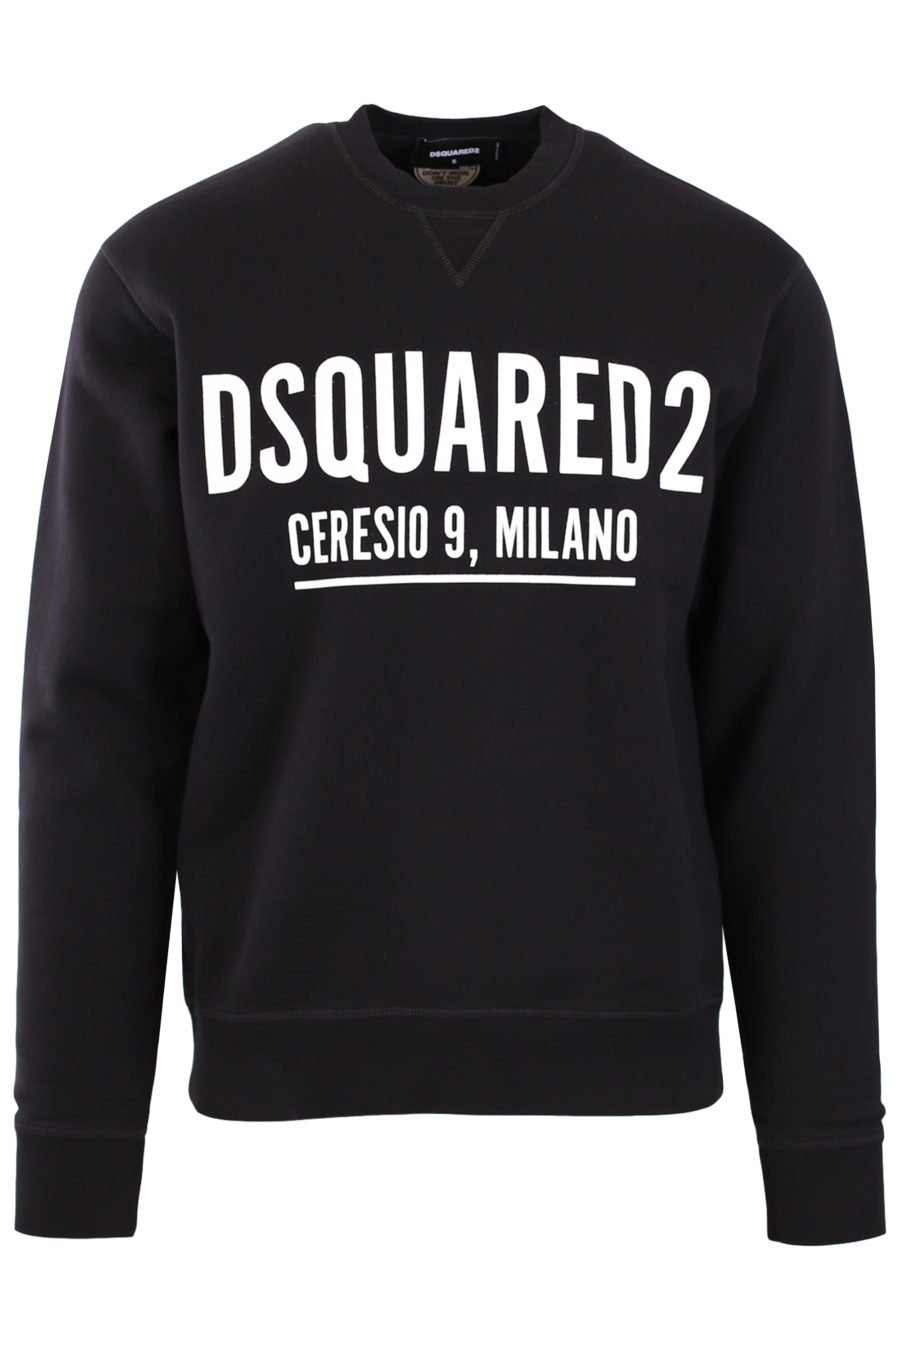 Black sweatshirt with logo "Ceresio 9 Milano" - d2e8d5ff022da83719b9db2973c5a108077a2c94